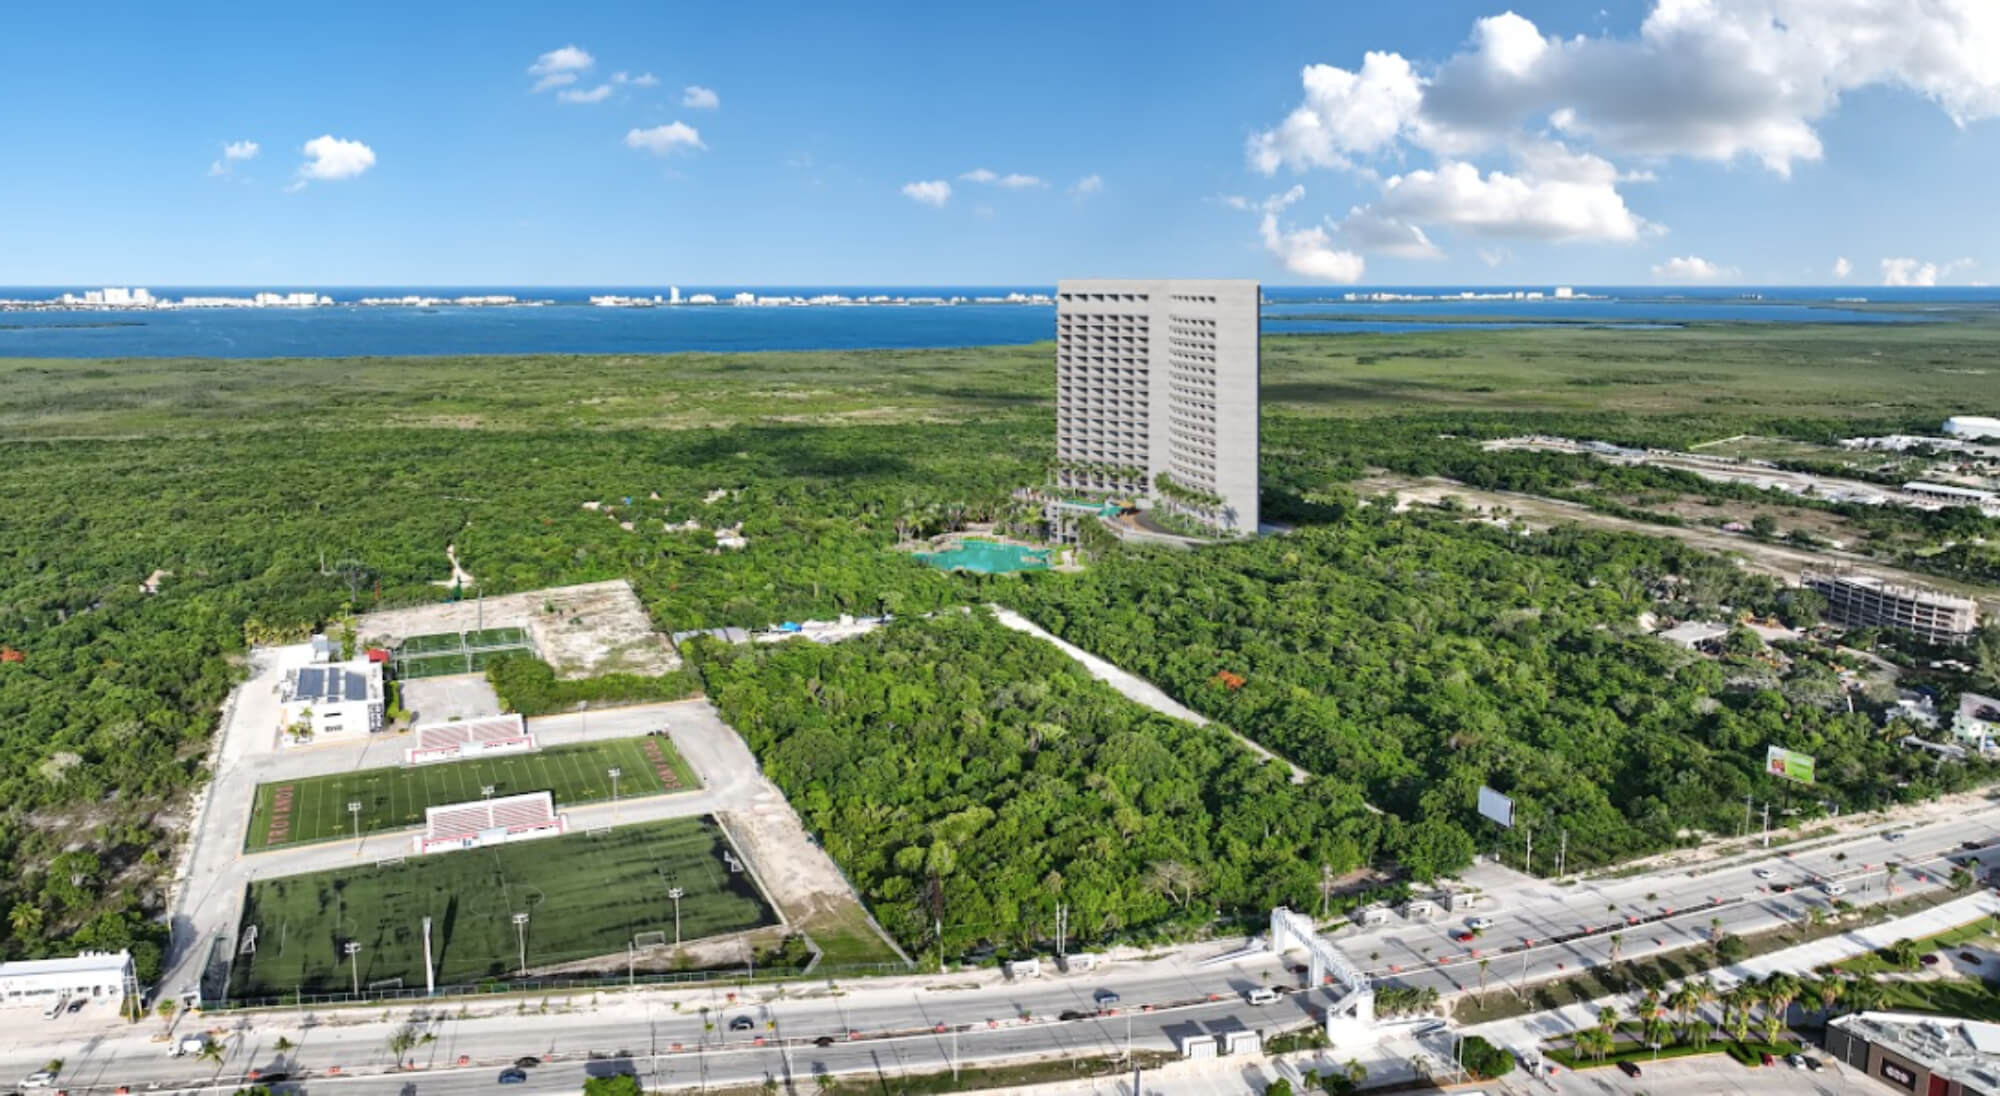 Penthouse con terraza de 25 m2, alberca familiar y alberca de adultos, area para perros, gimnasio, spa, y mas , en venta Cancún